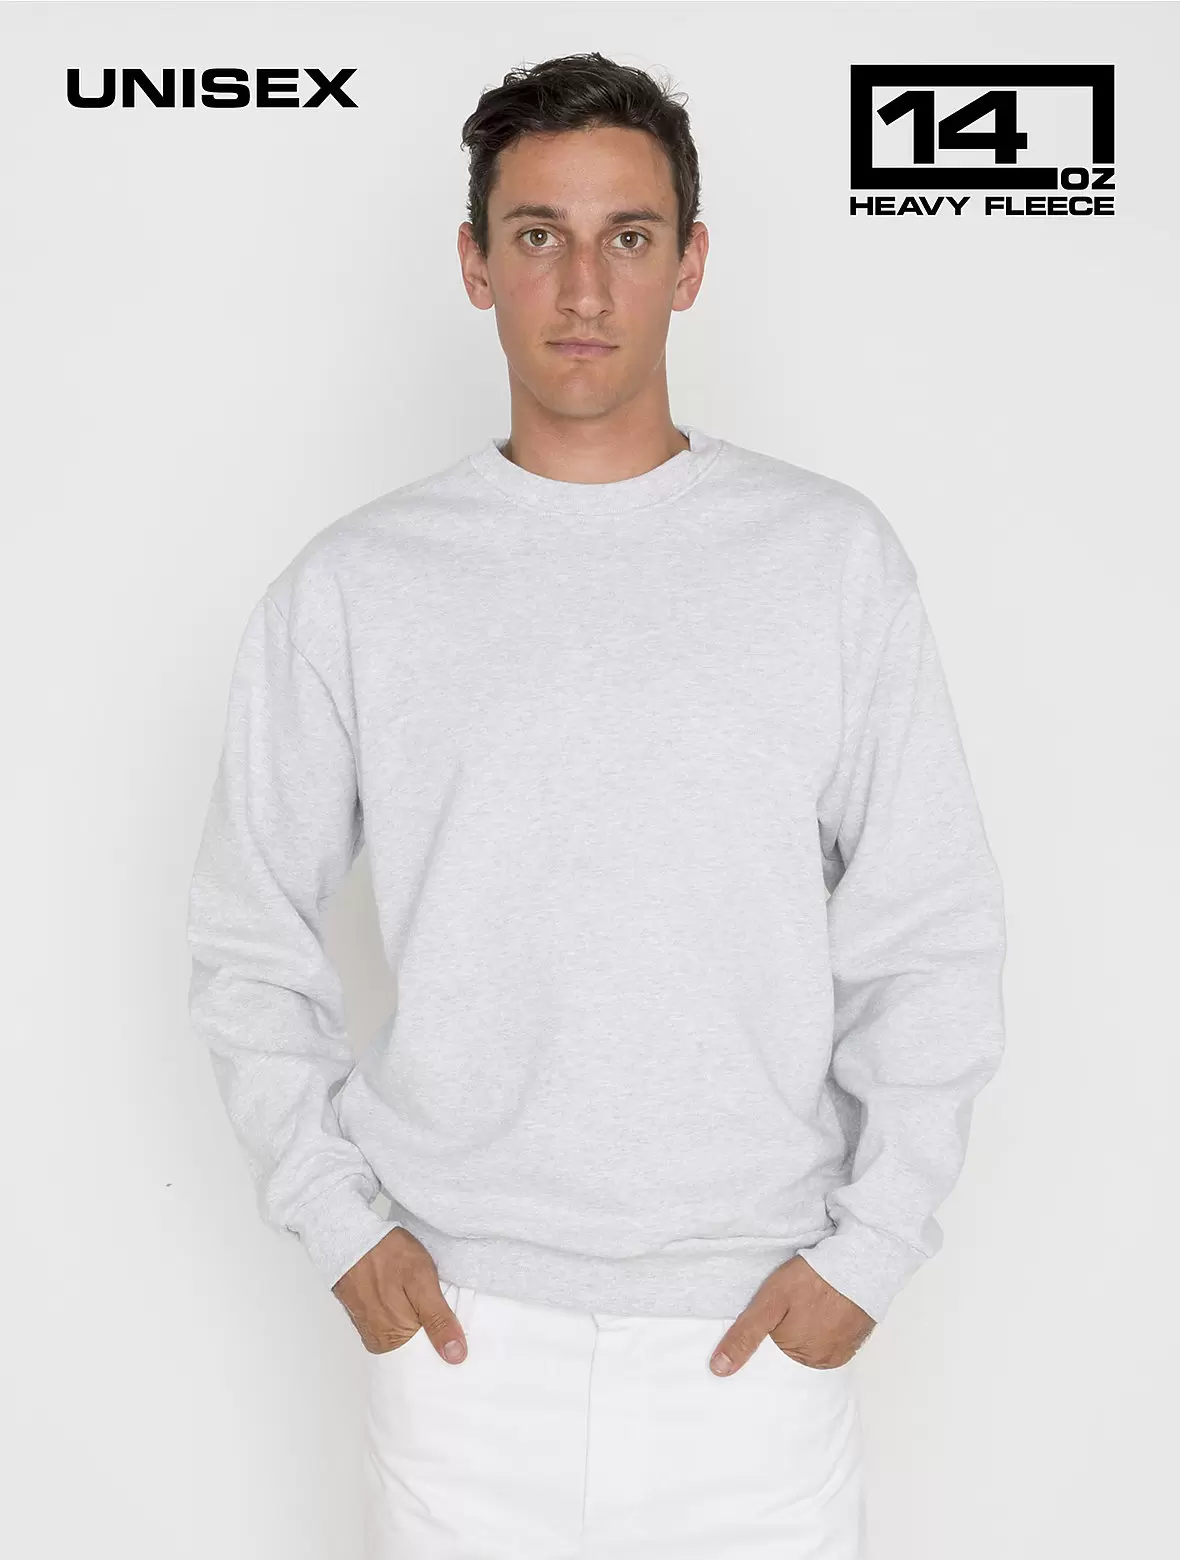 Los Angeles Apparel HF-07 Heavy Fleece Pullover Plain Crewneck Sweatshirt  14 oz - From $21.91